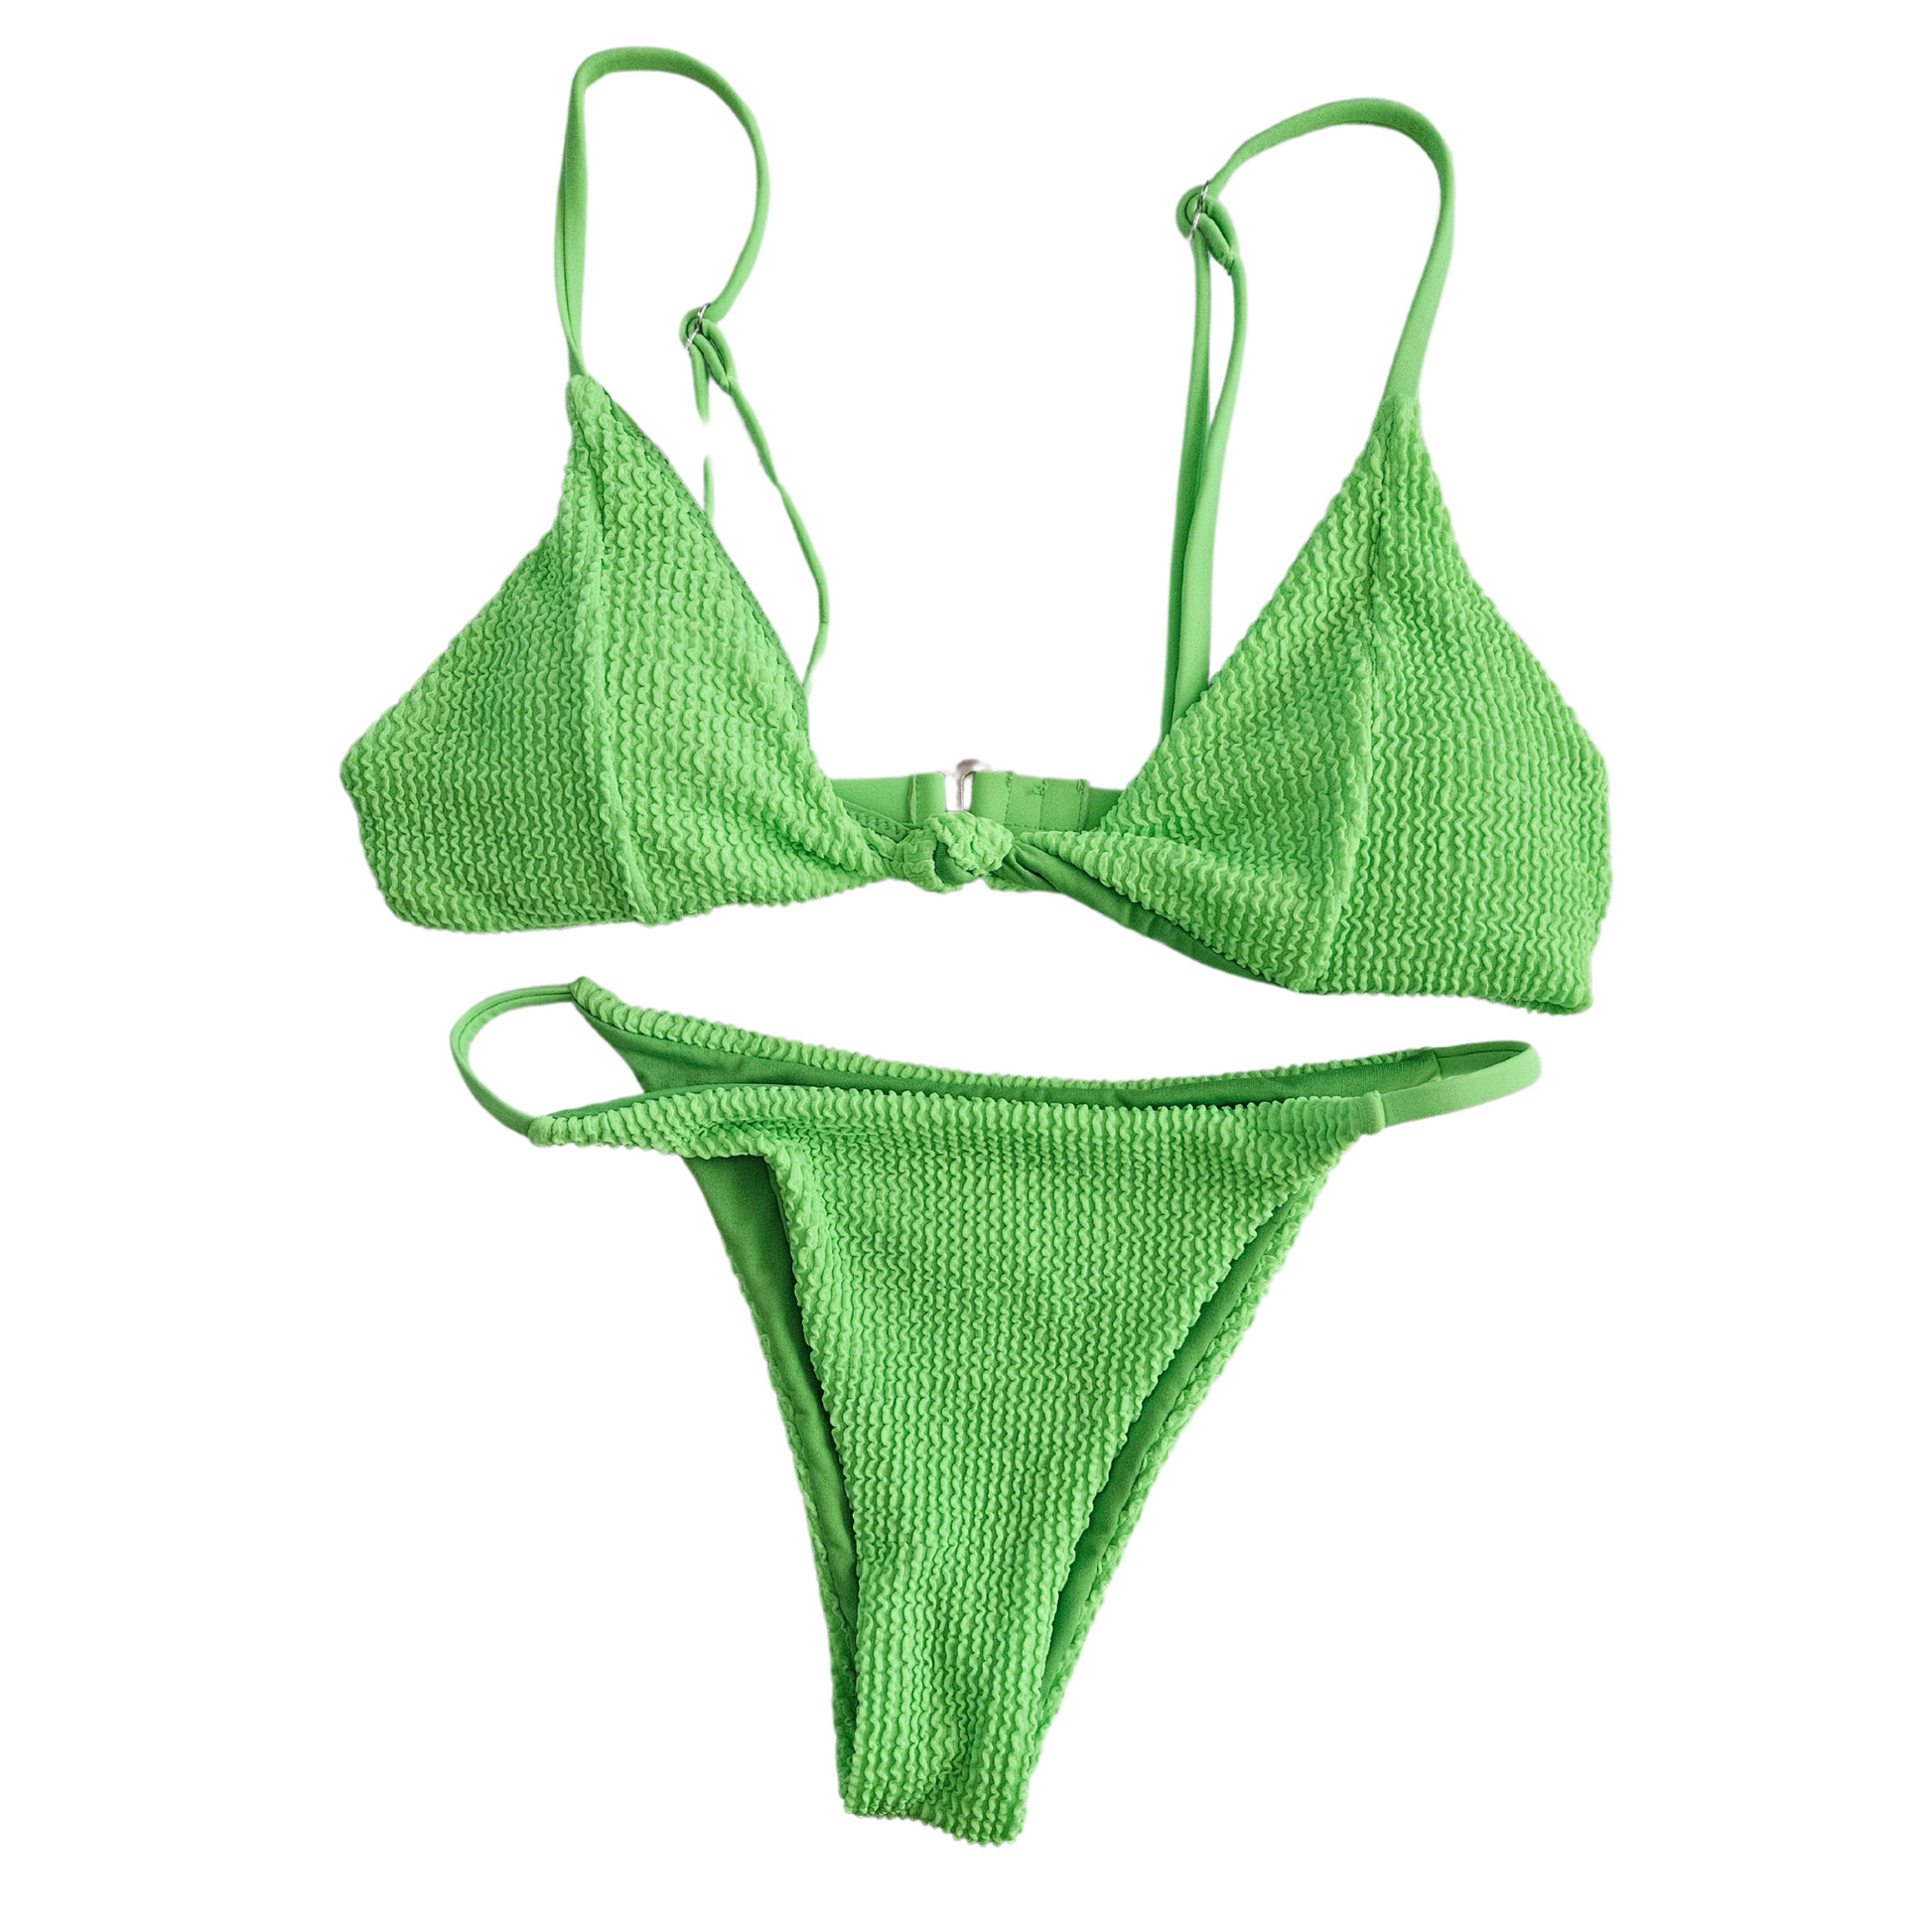 Green Neon Textured Two-Piece Bikini by RitaRosa